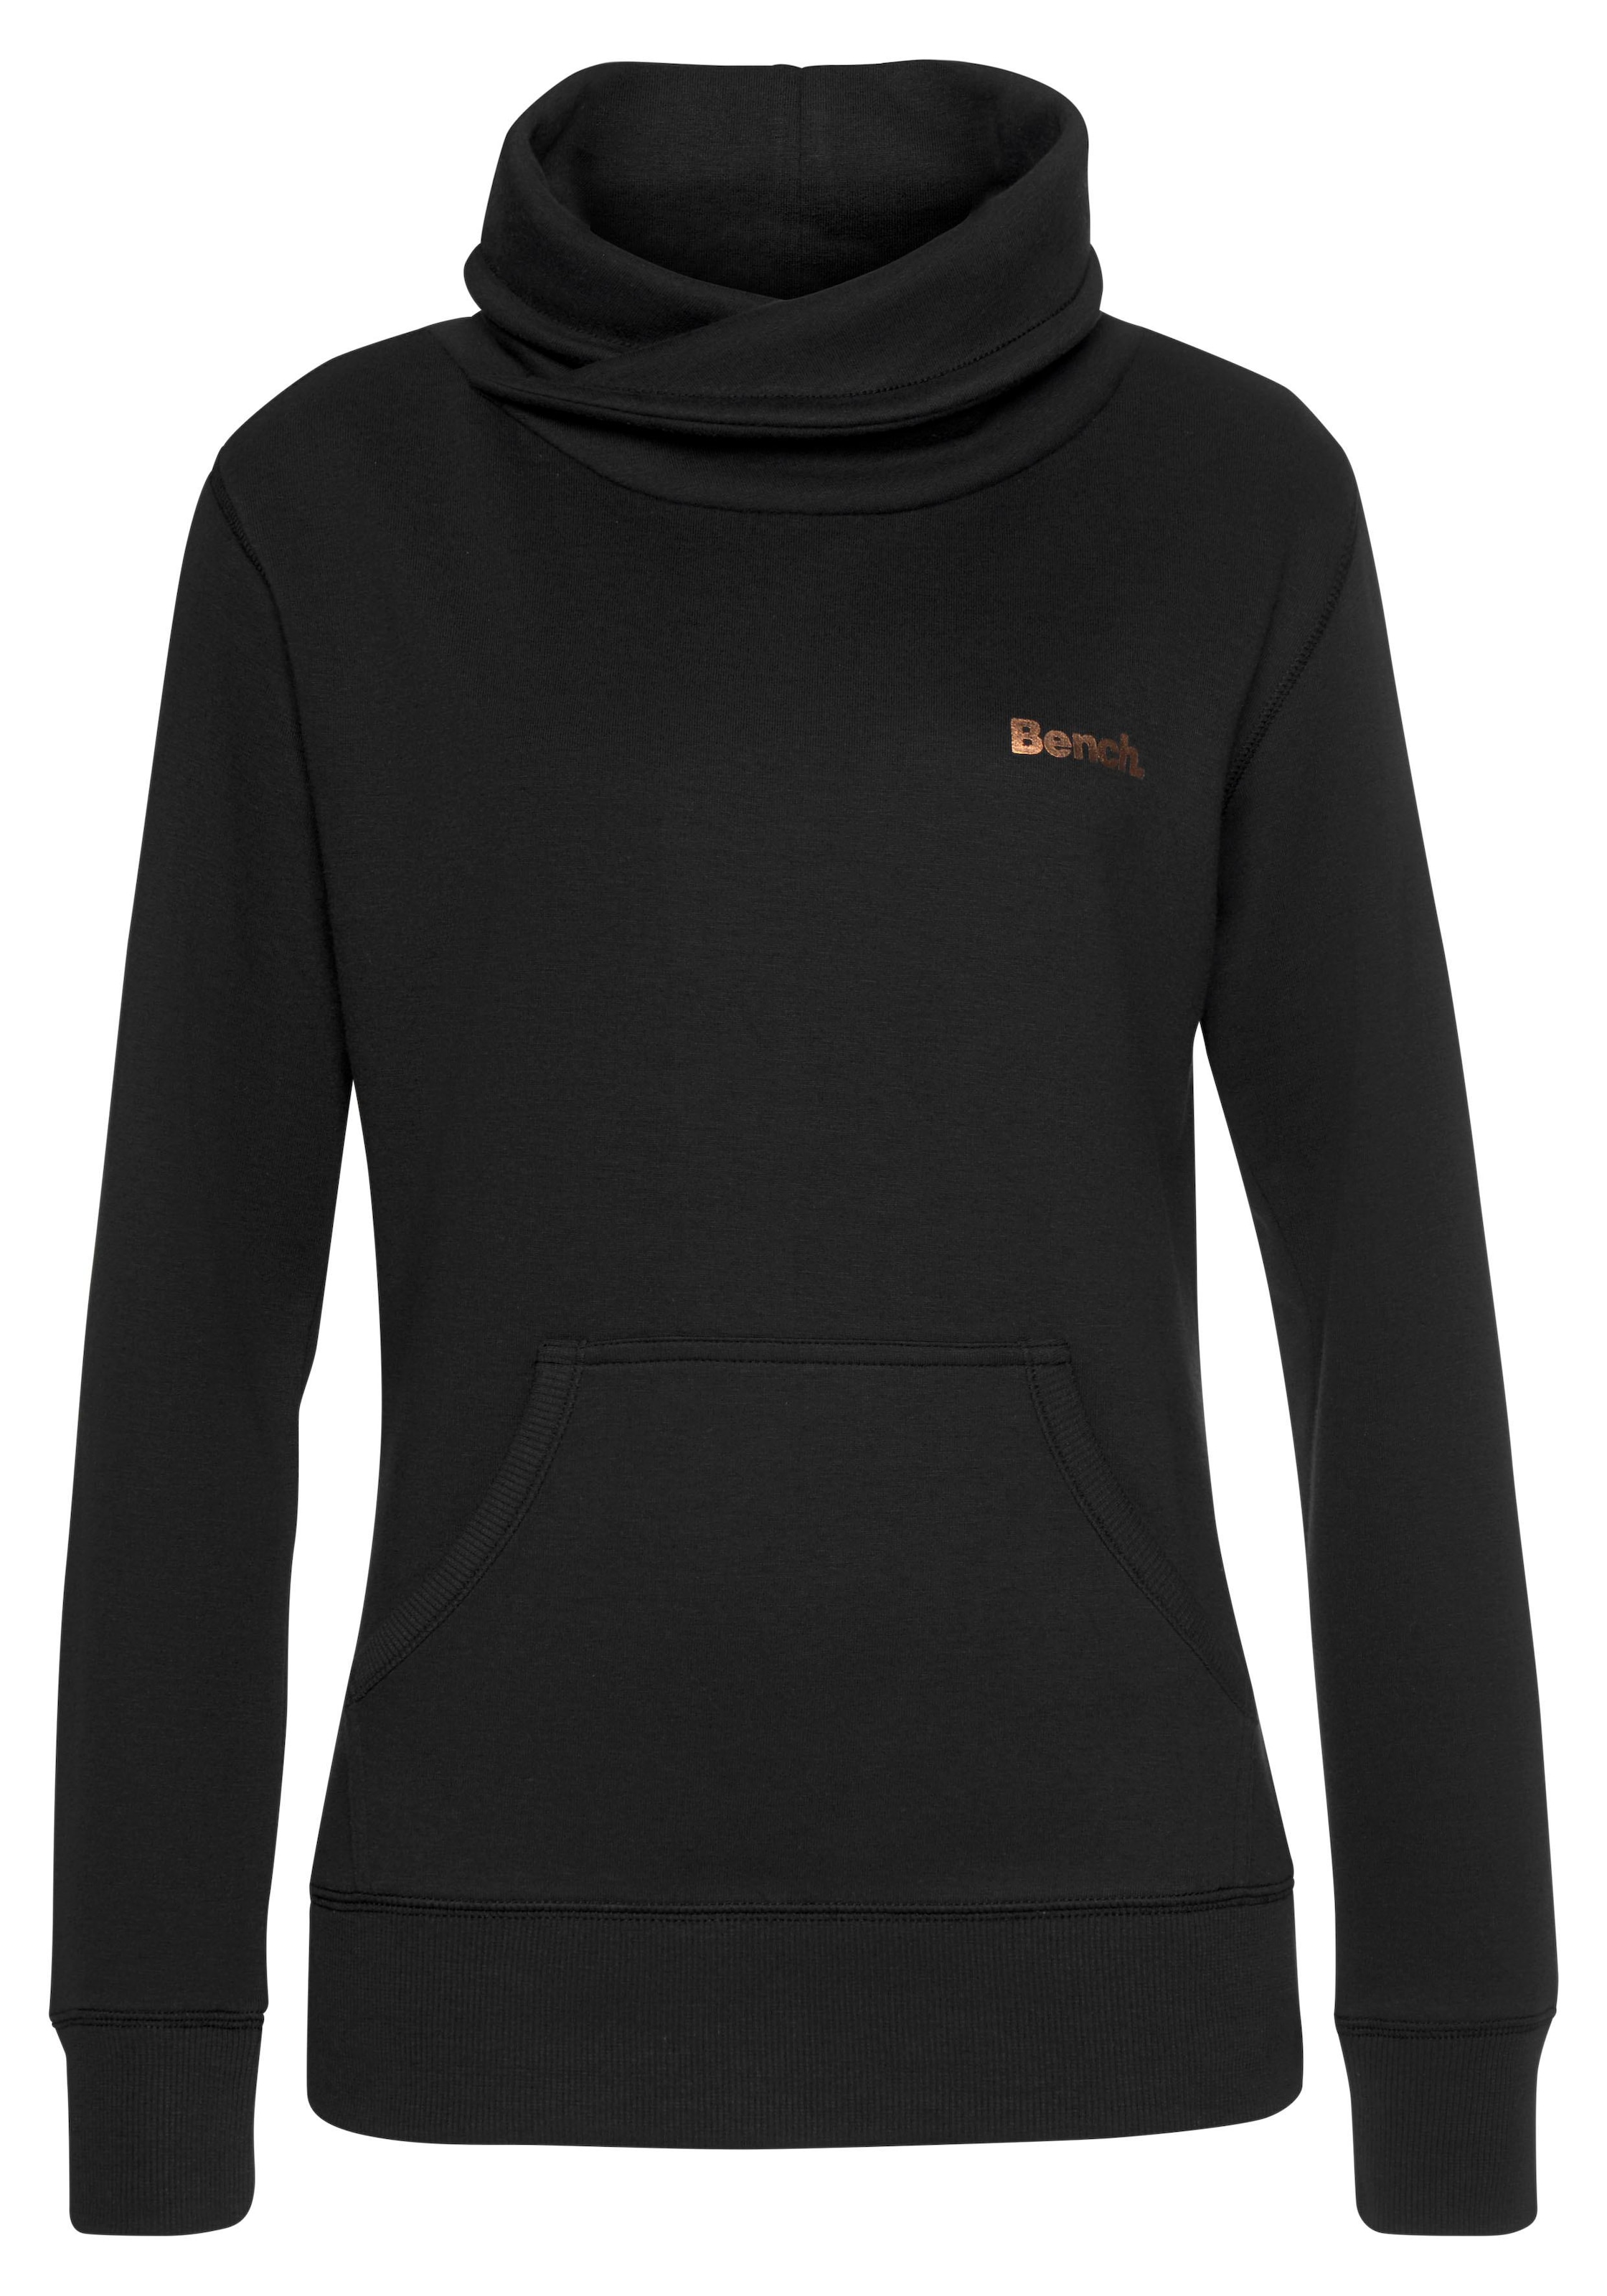 Bench. Sweatshirt mit Layeroptik | BAUR kaufen online